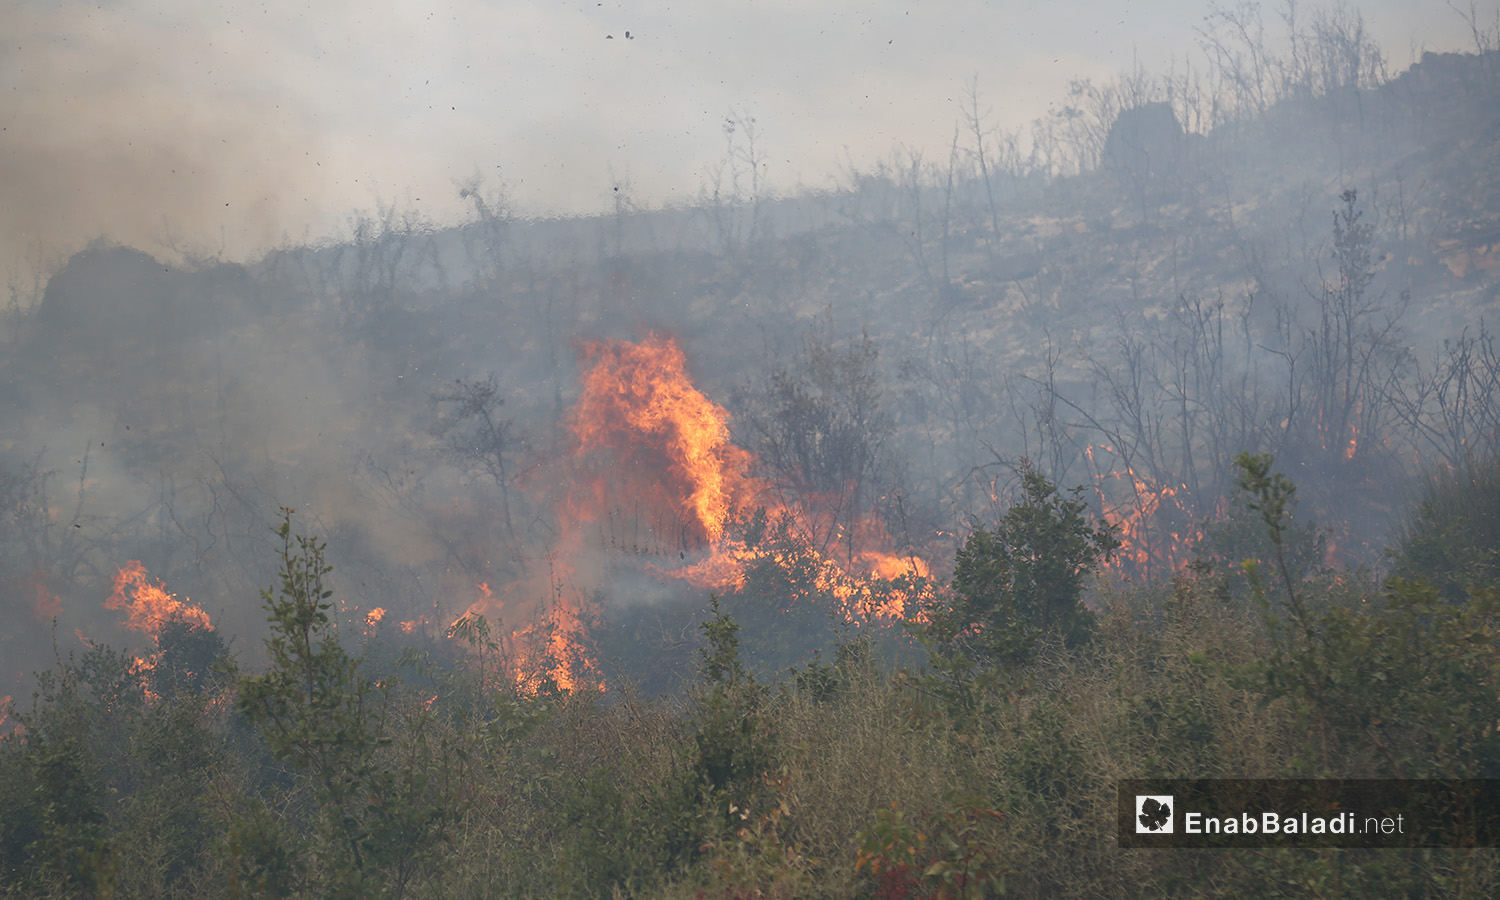 حرائق الغابات في جسر الشغور لم تكن بحدة الحرائق المشتعلة لأيام في الساحل السوري - 10 أيلول 2020 (عنب بلدي)